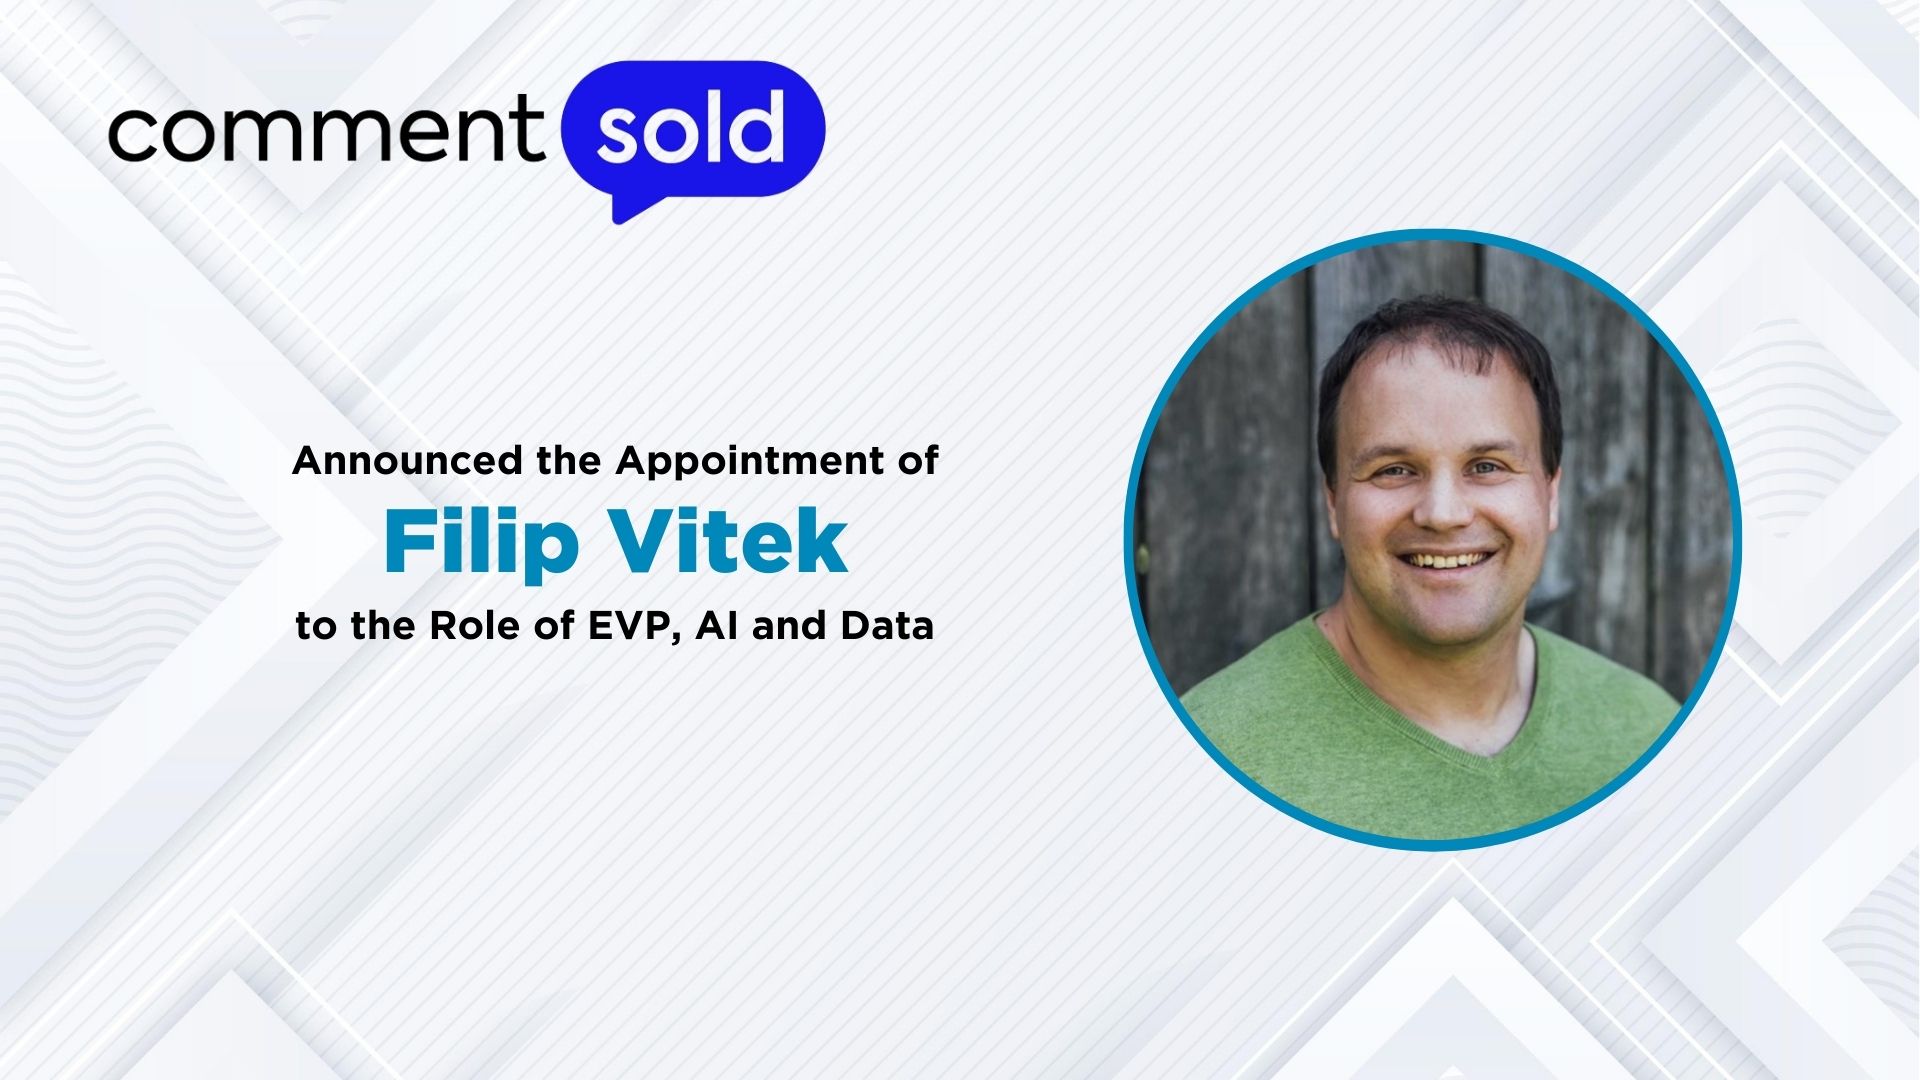 CommentSold Appoints E-Commerce Veteran Filip Vítek as EVP to lead AI Development